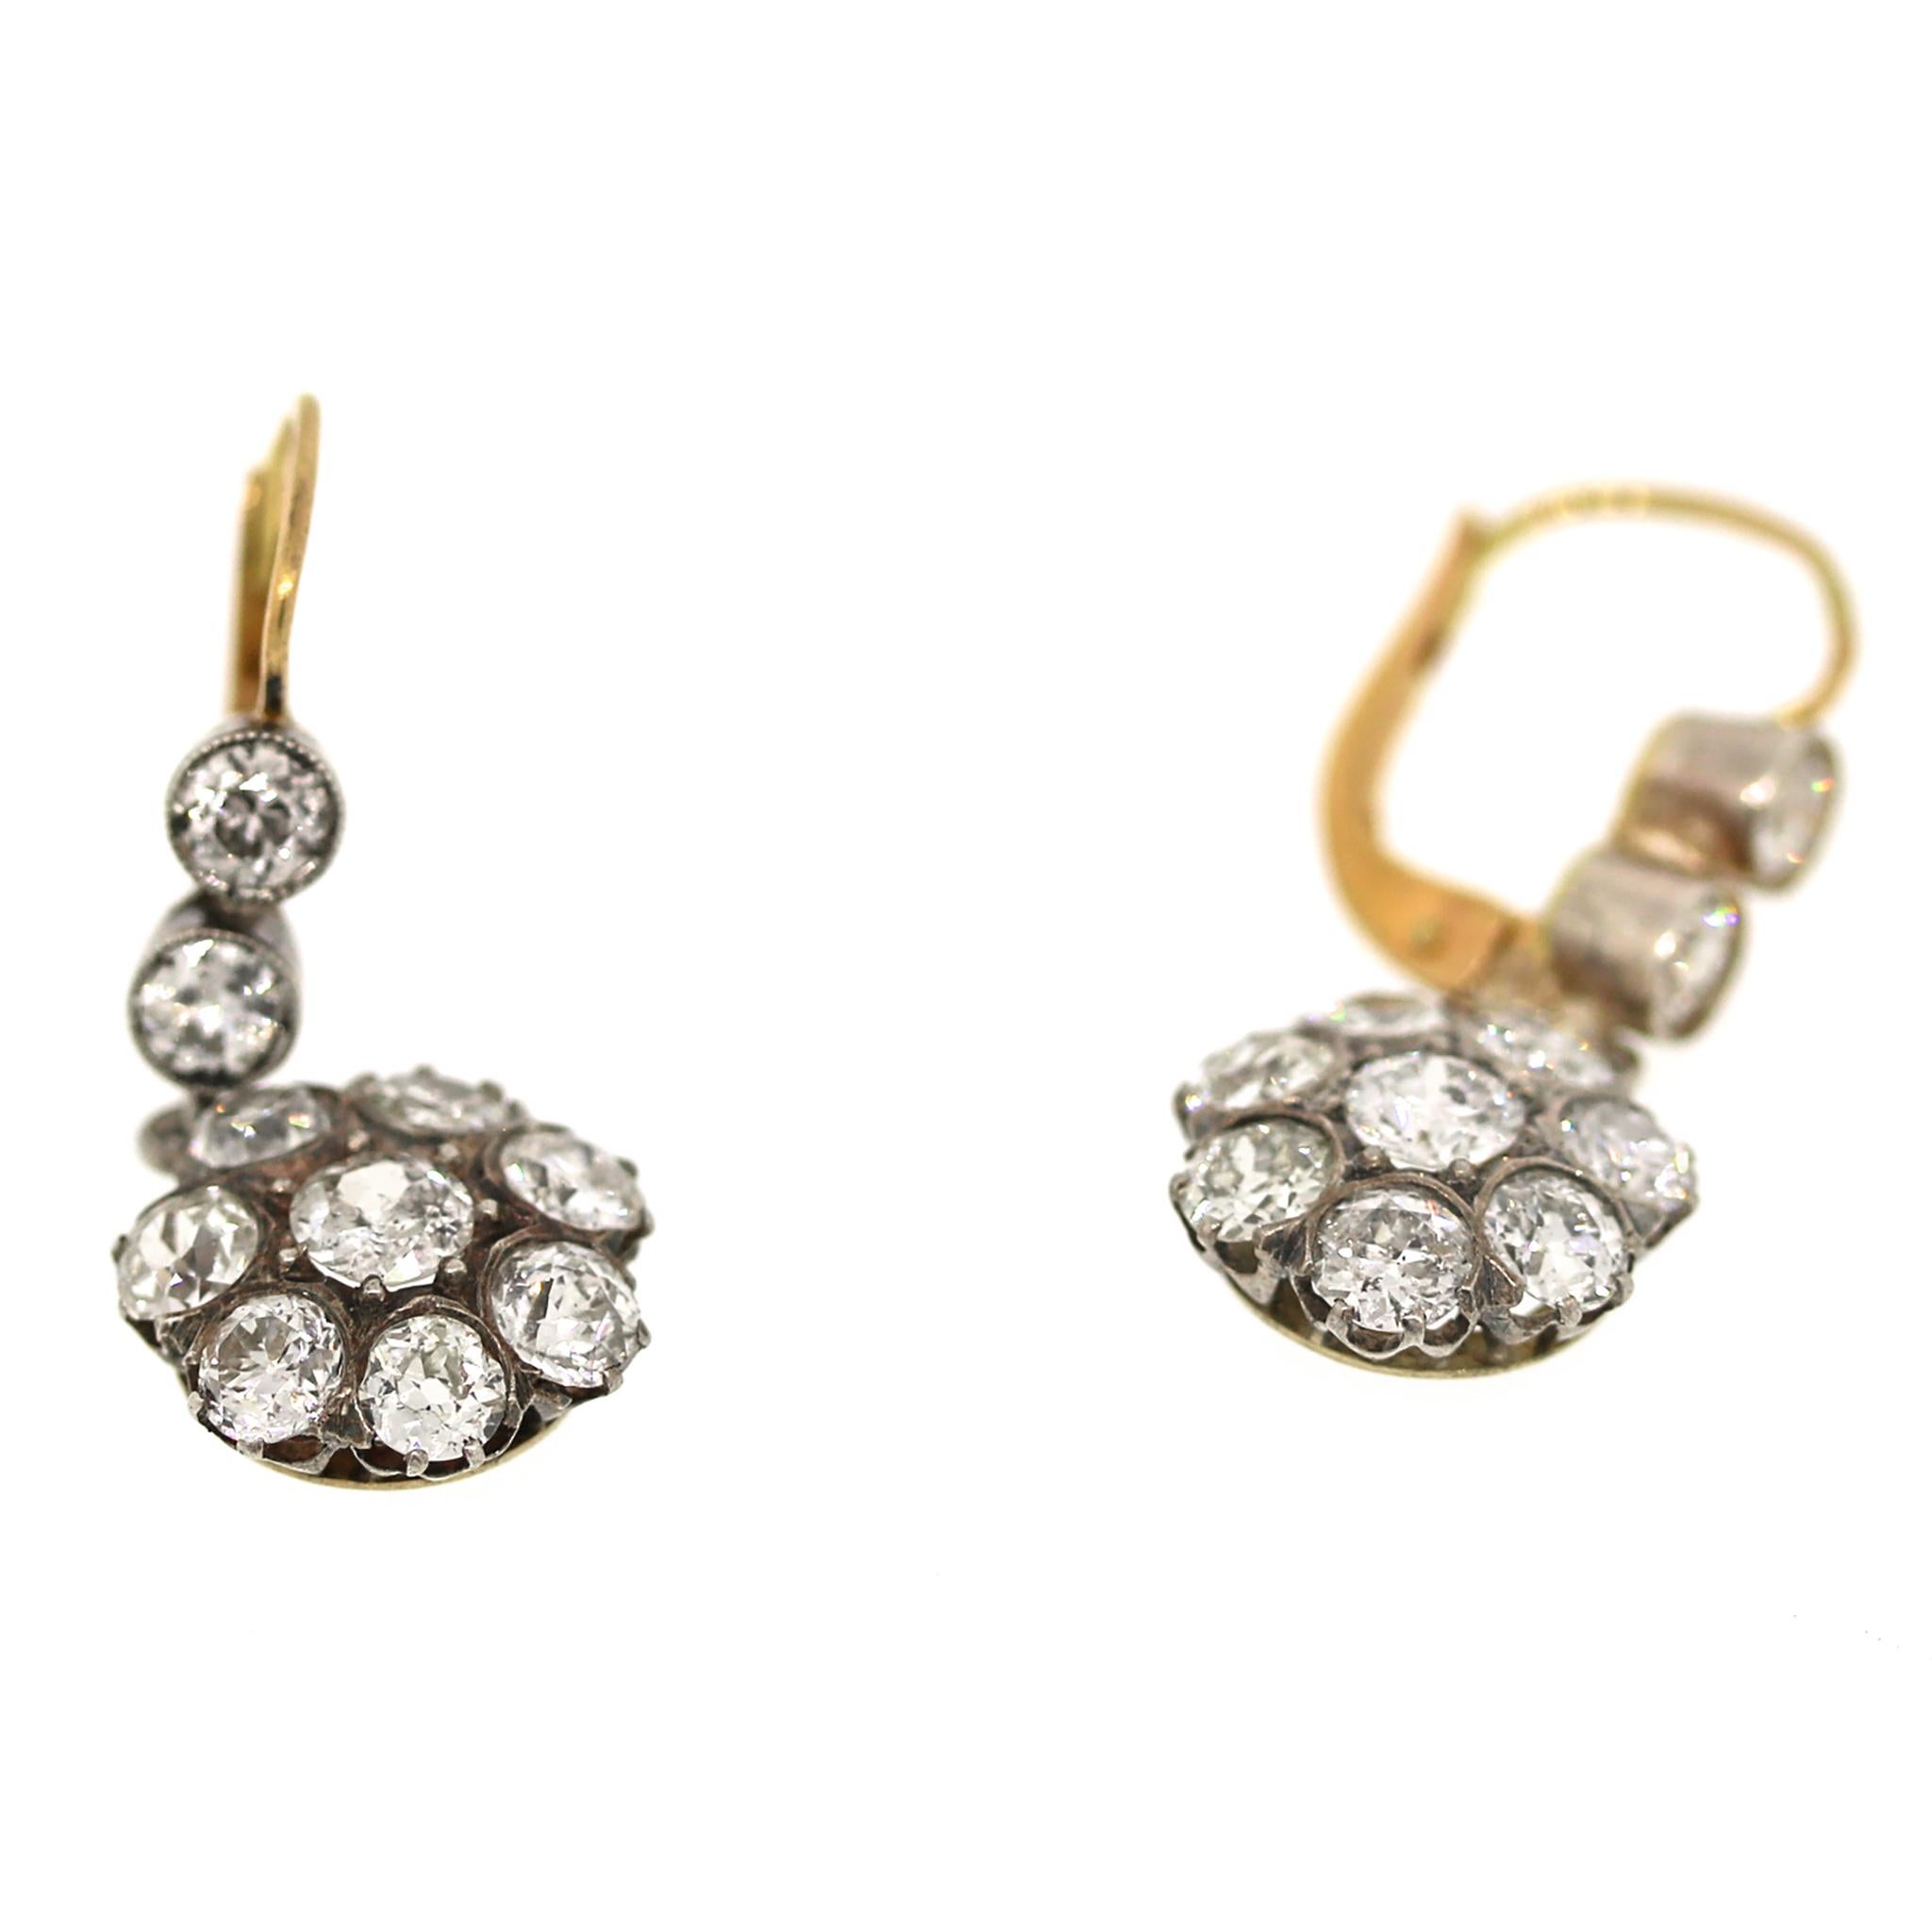 Ein unglaubliches Paar Diamant-Cluster-Ohrringe aus der viktorianischen Ära.

14 kt Gelbgold
Diamant: 2 ct twd
Alteuropäischer Brillantschliff
Länge: 1 Zoll